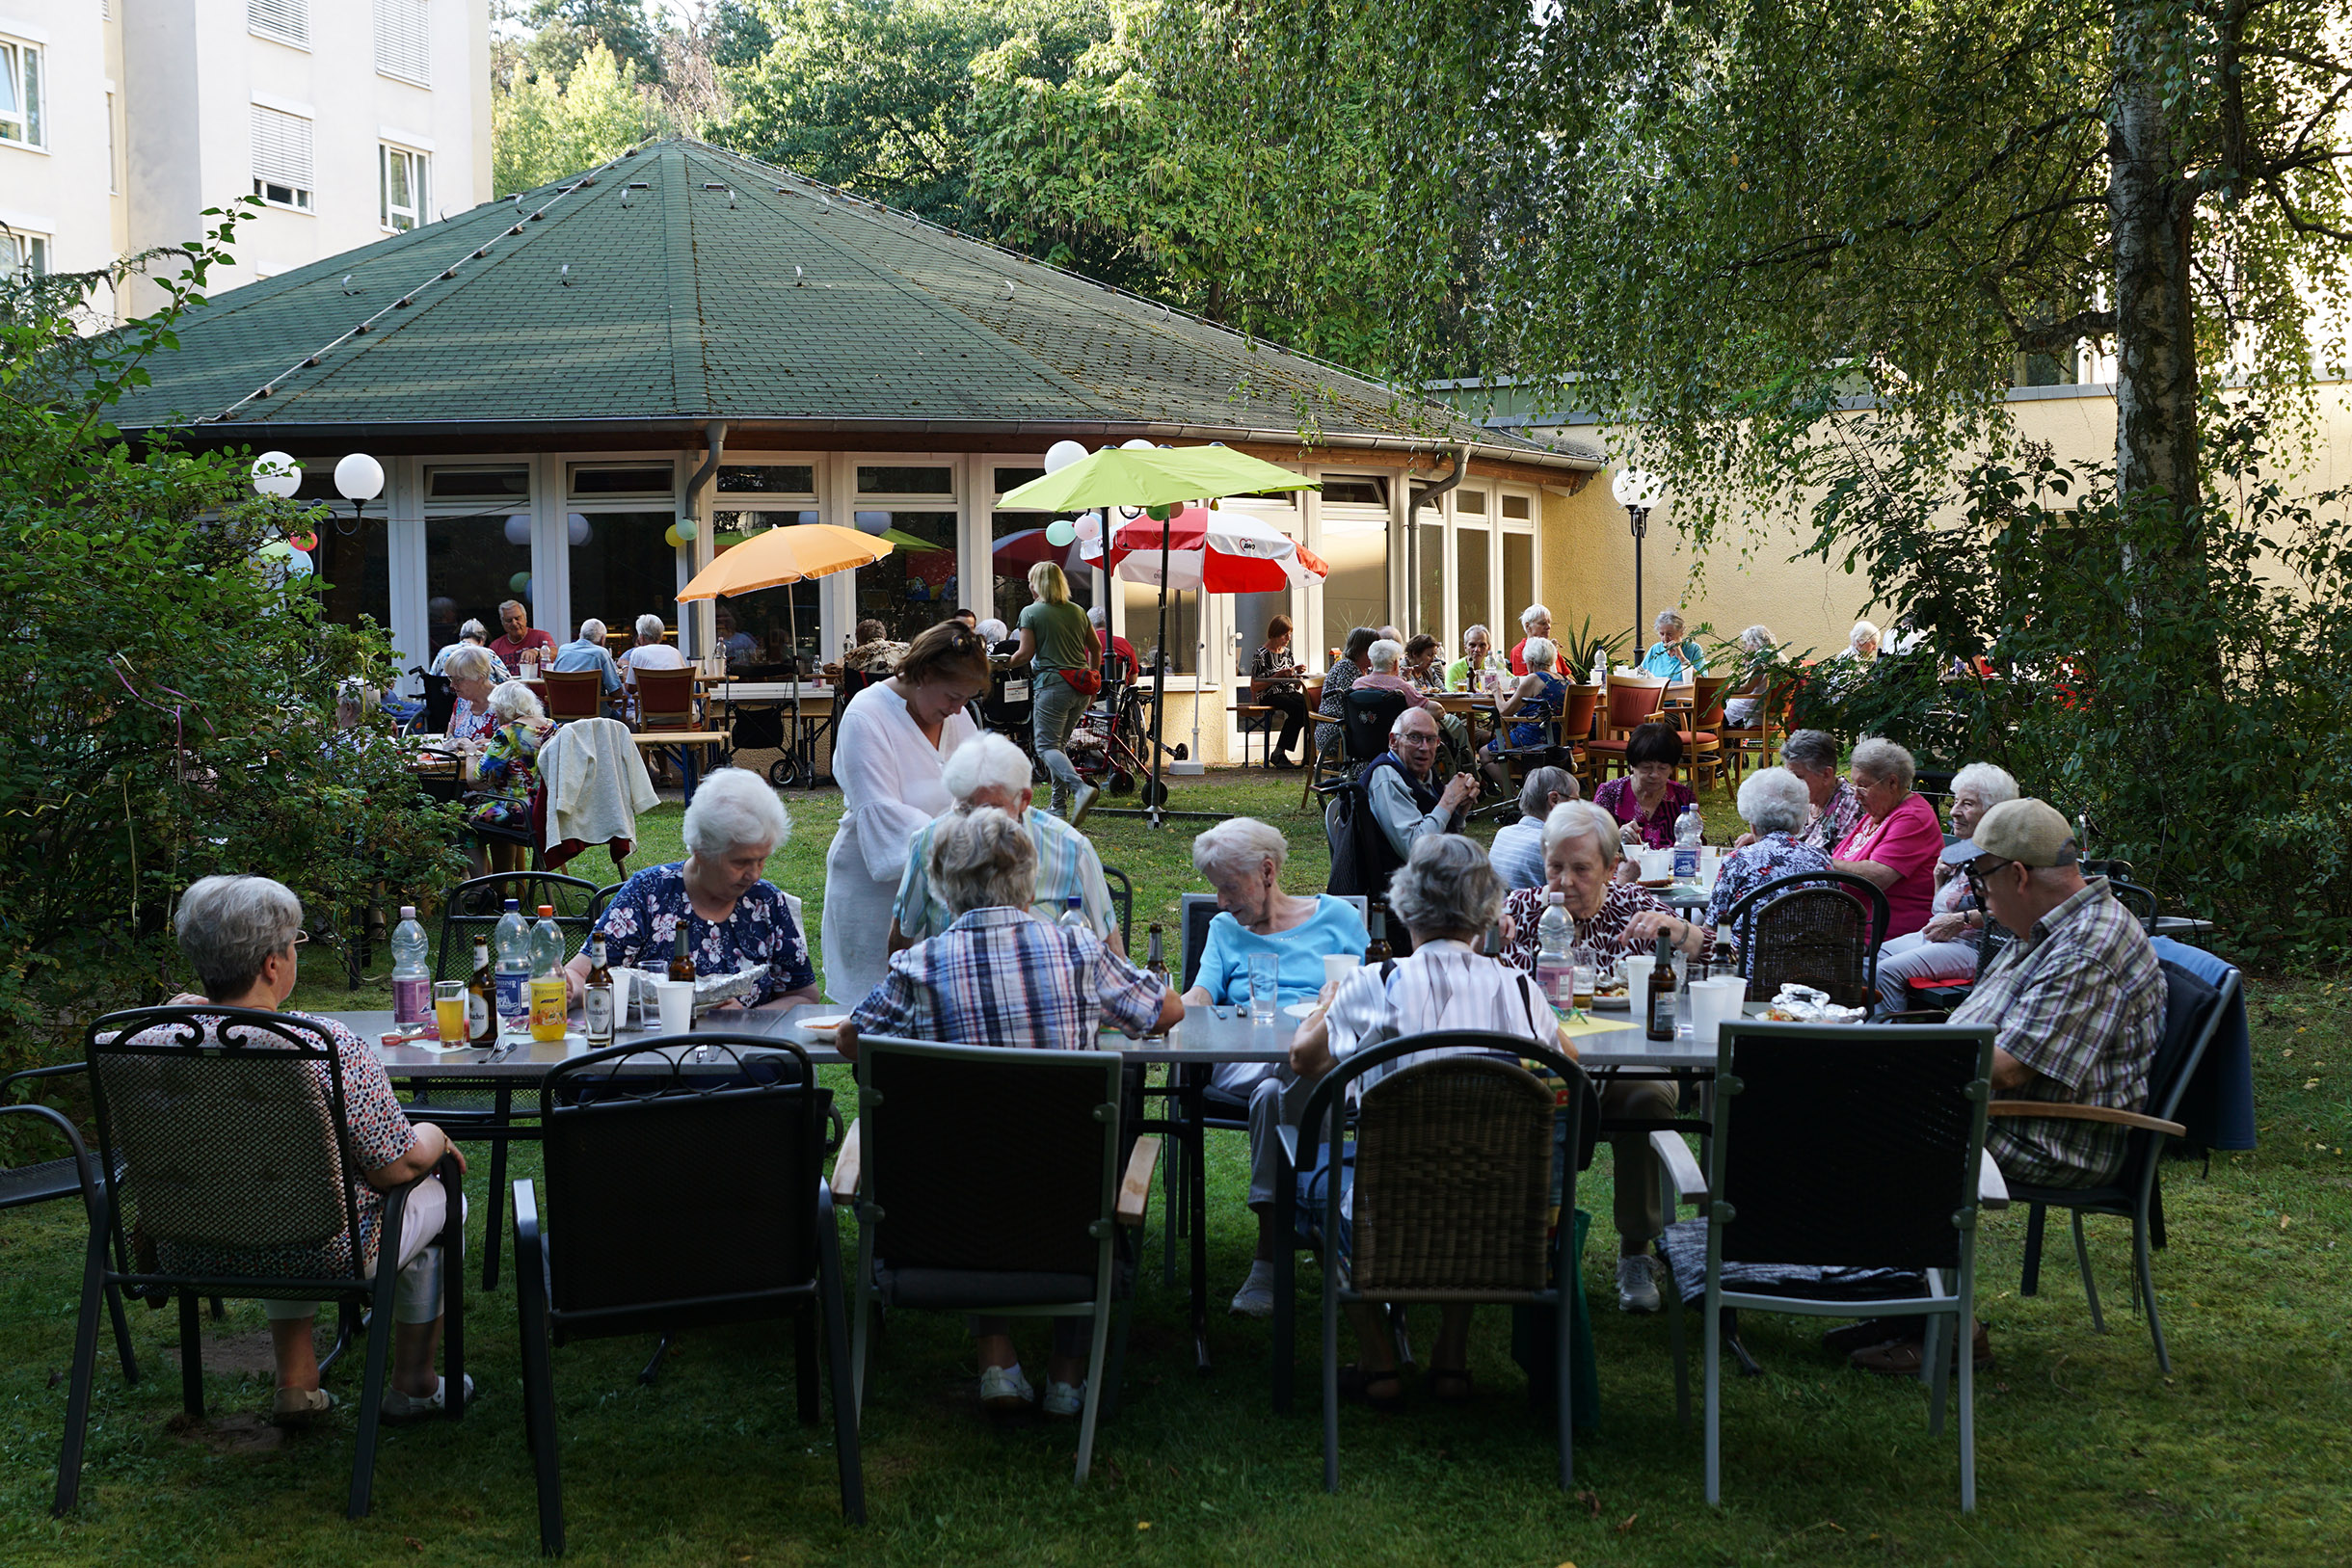 Draußen, Tische sind aneinander gereiht. Ältere Menschen sitzen essen und trinken. Ein großer Baum spendet Schatten, sonst sind kleine farbige Sonnenschirme aufgestellt.